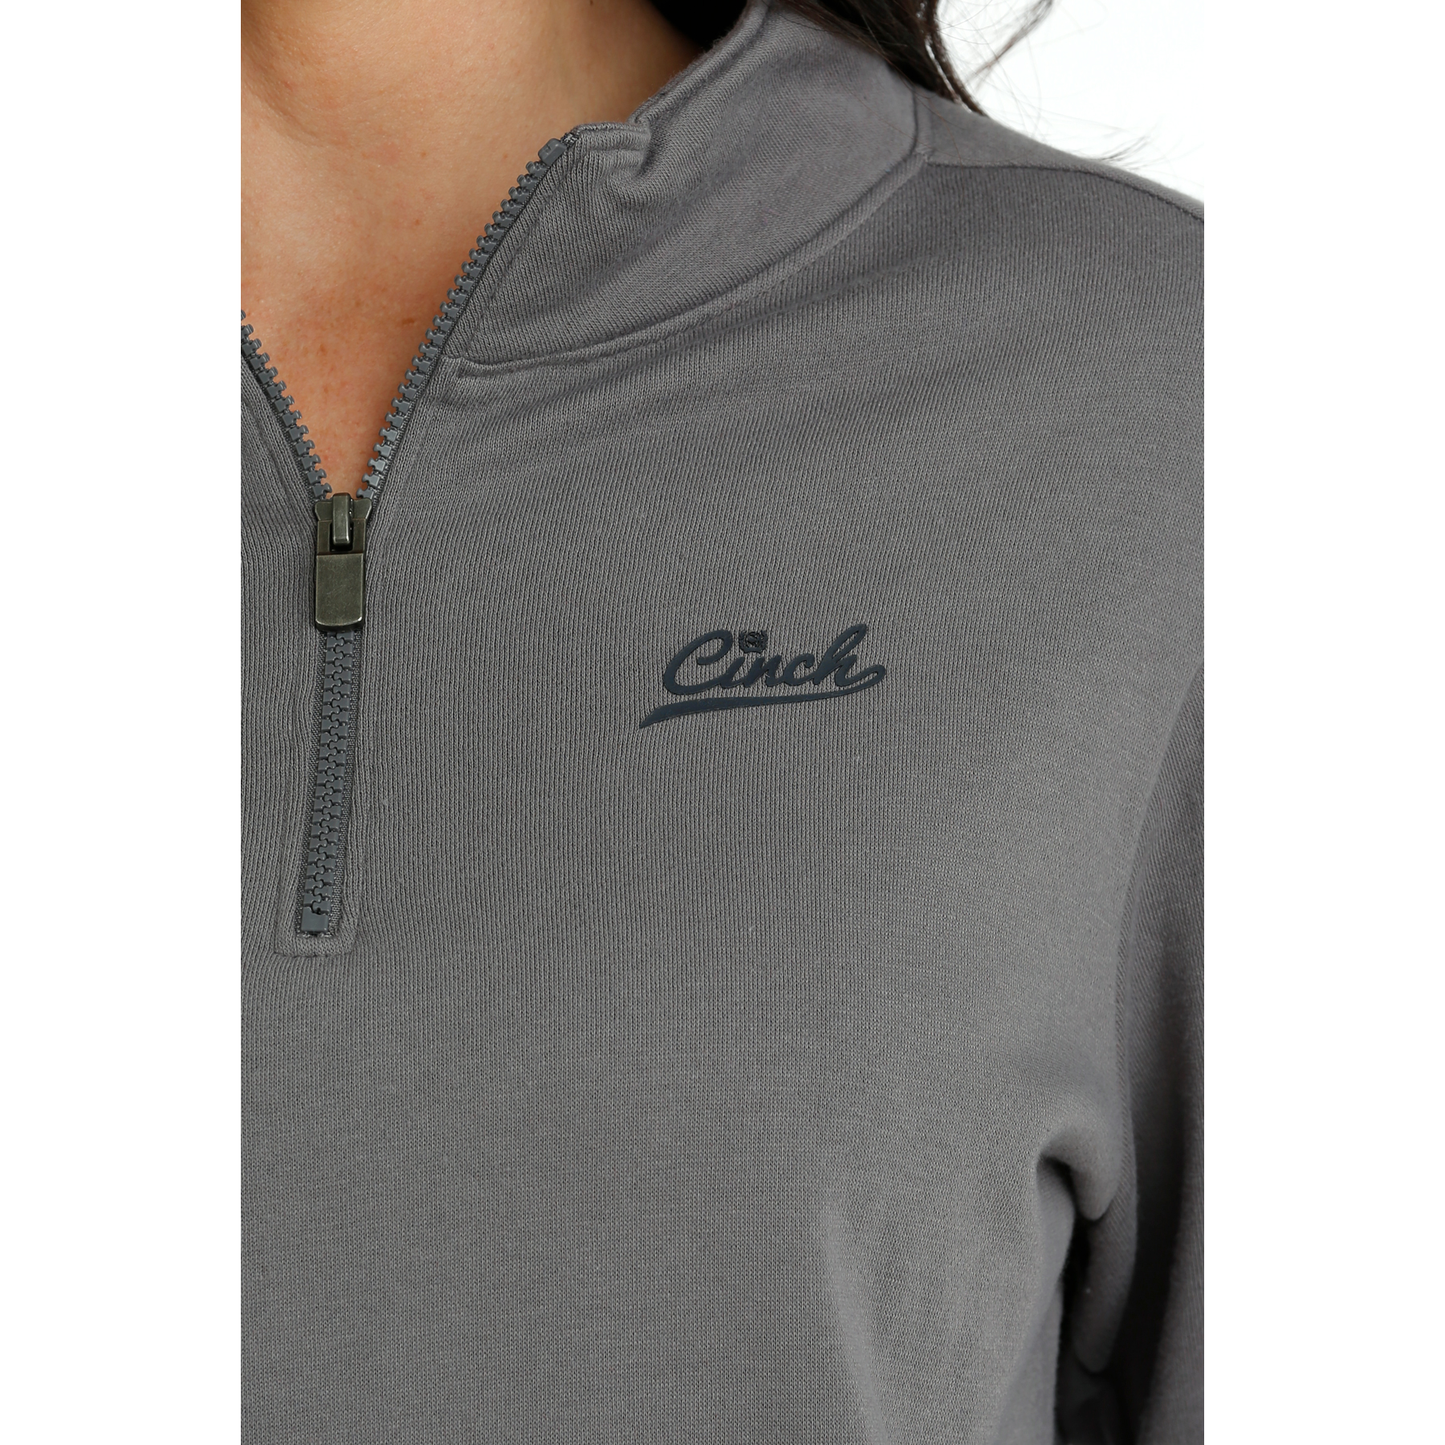 Cinch Ladies Grey Quarter Zip Pullover MAK7906002